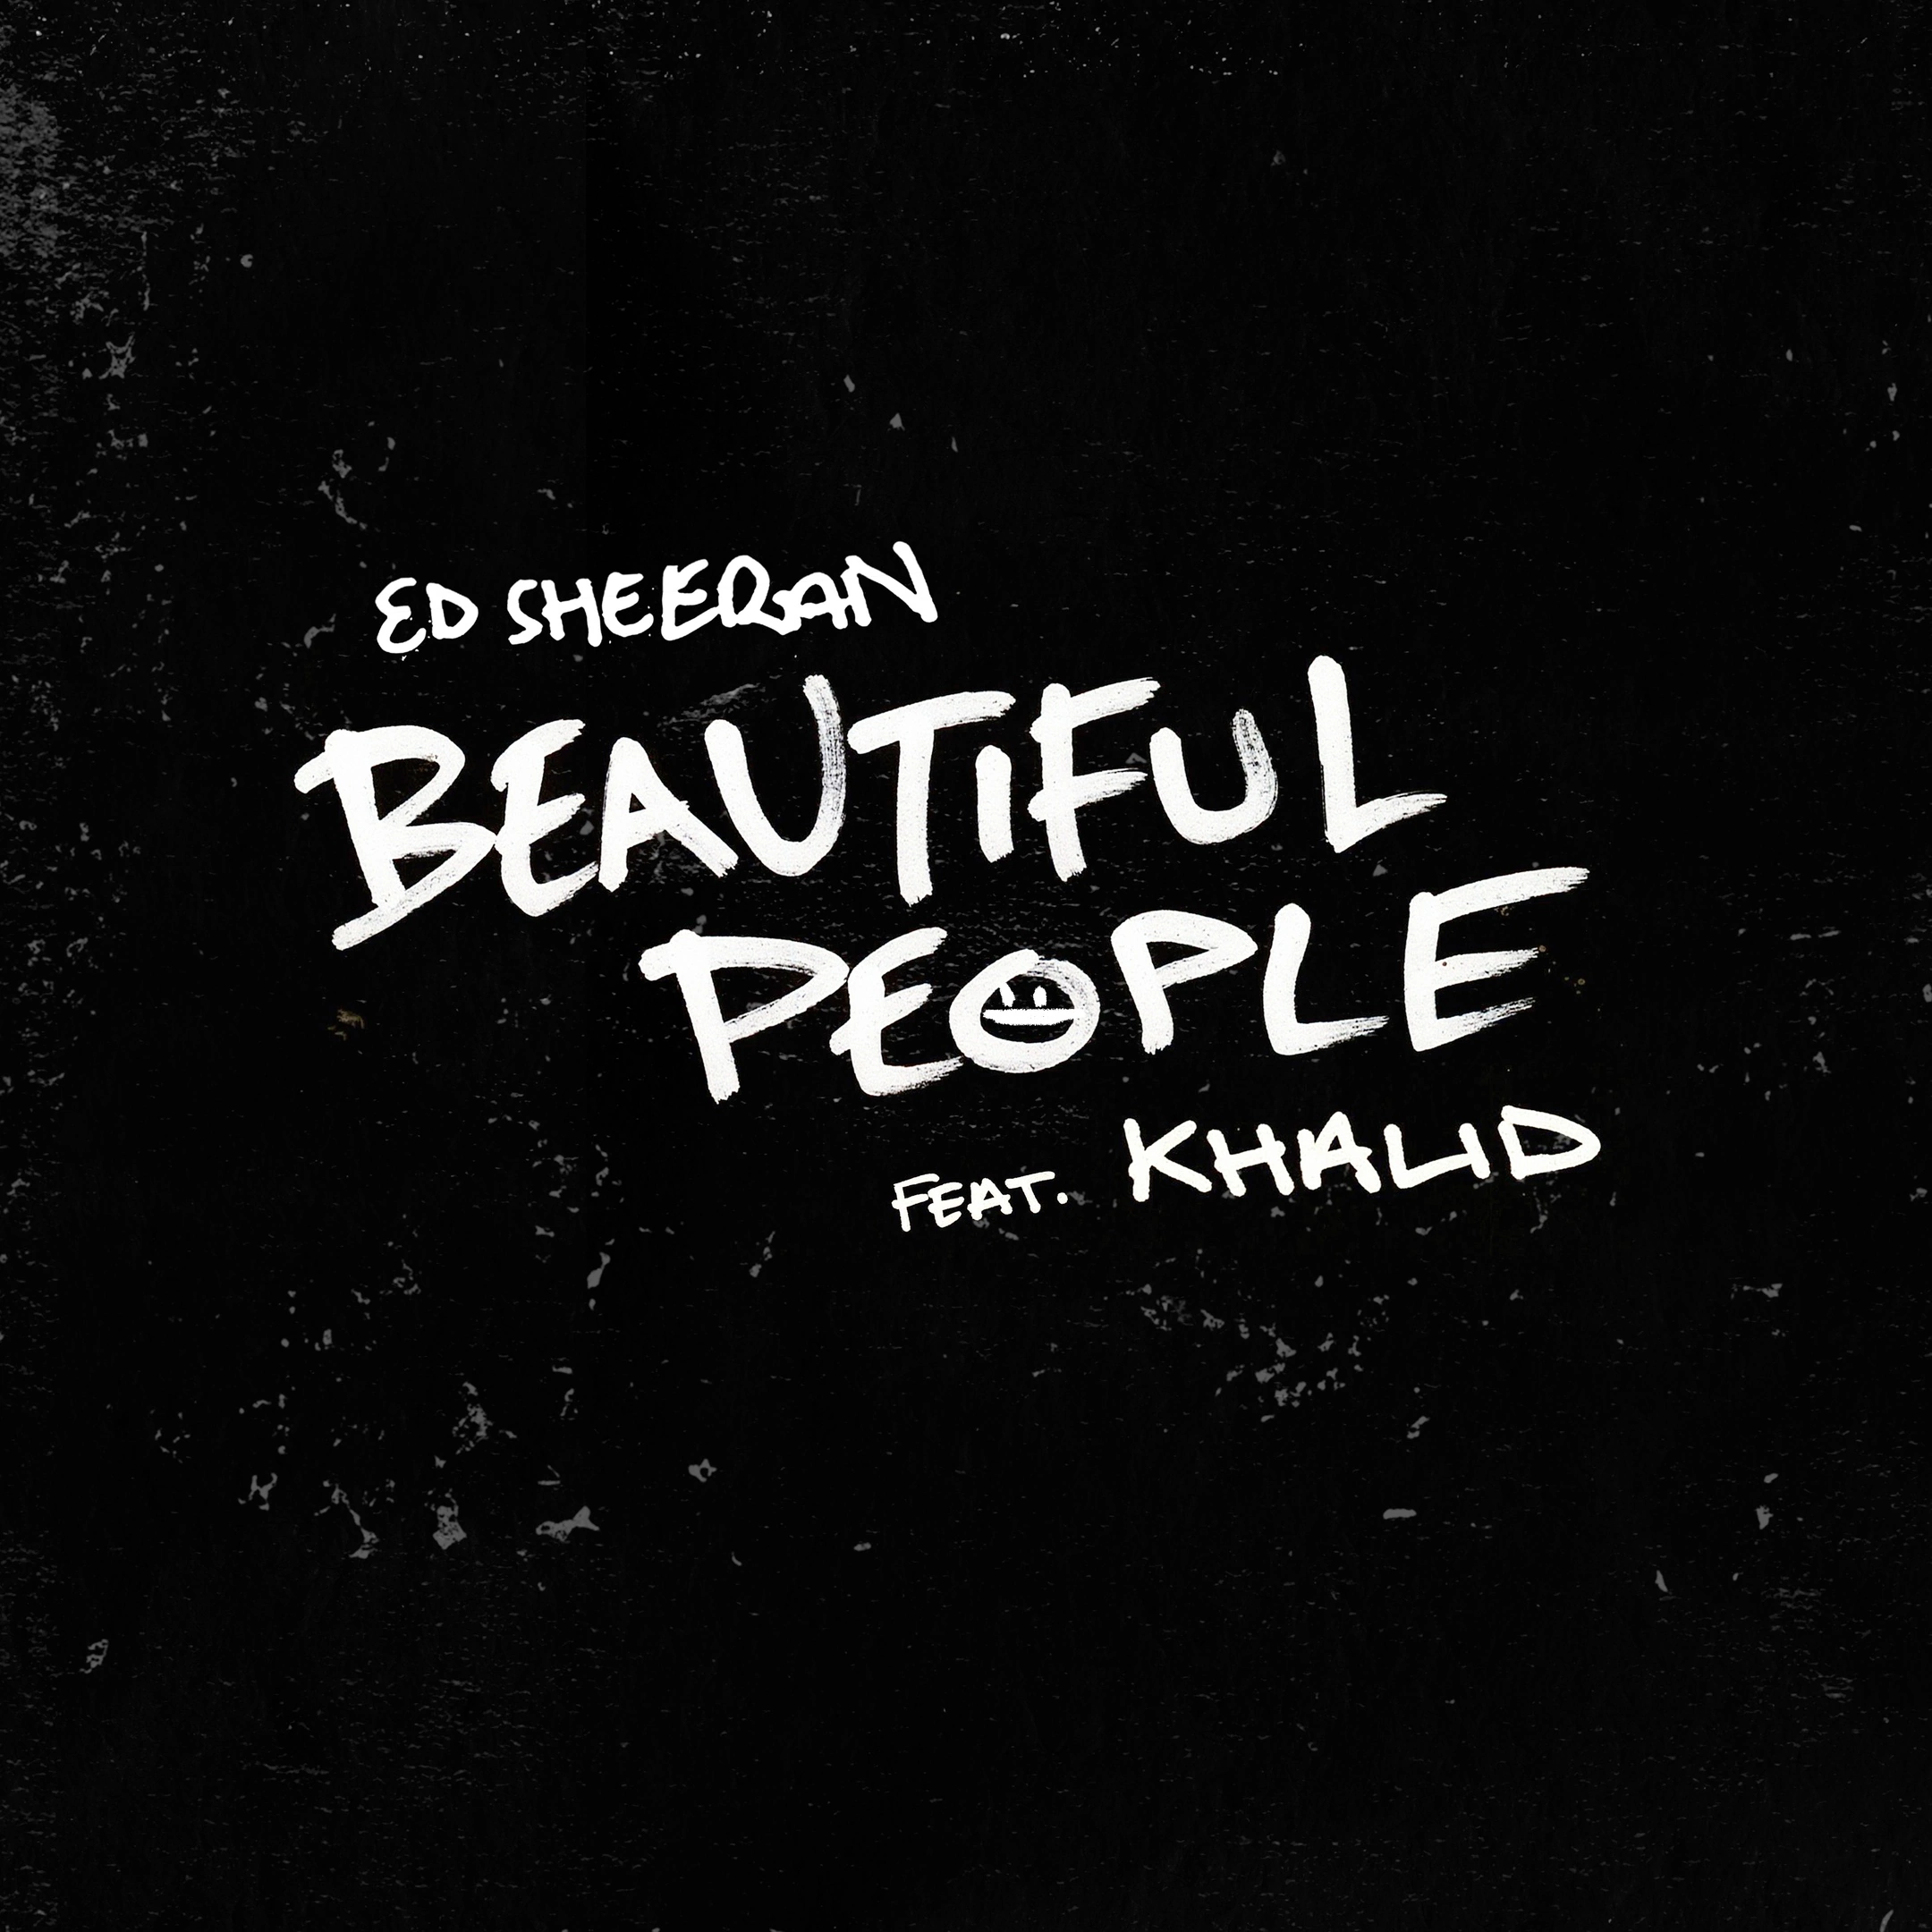 Ed Sheeran ft. featuring Khalid Beautiful People cover artwork